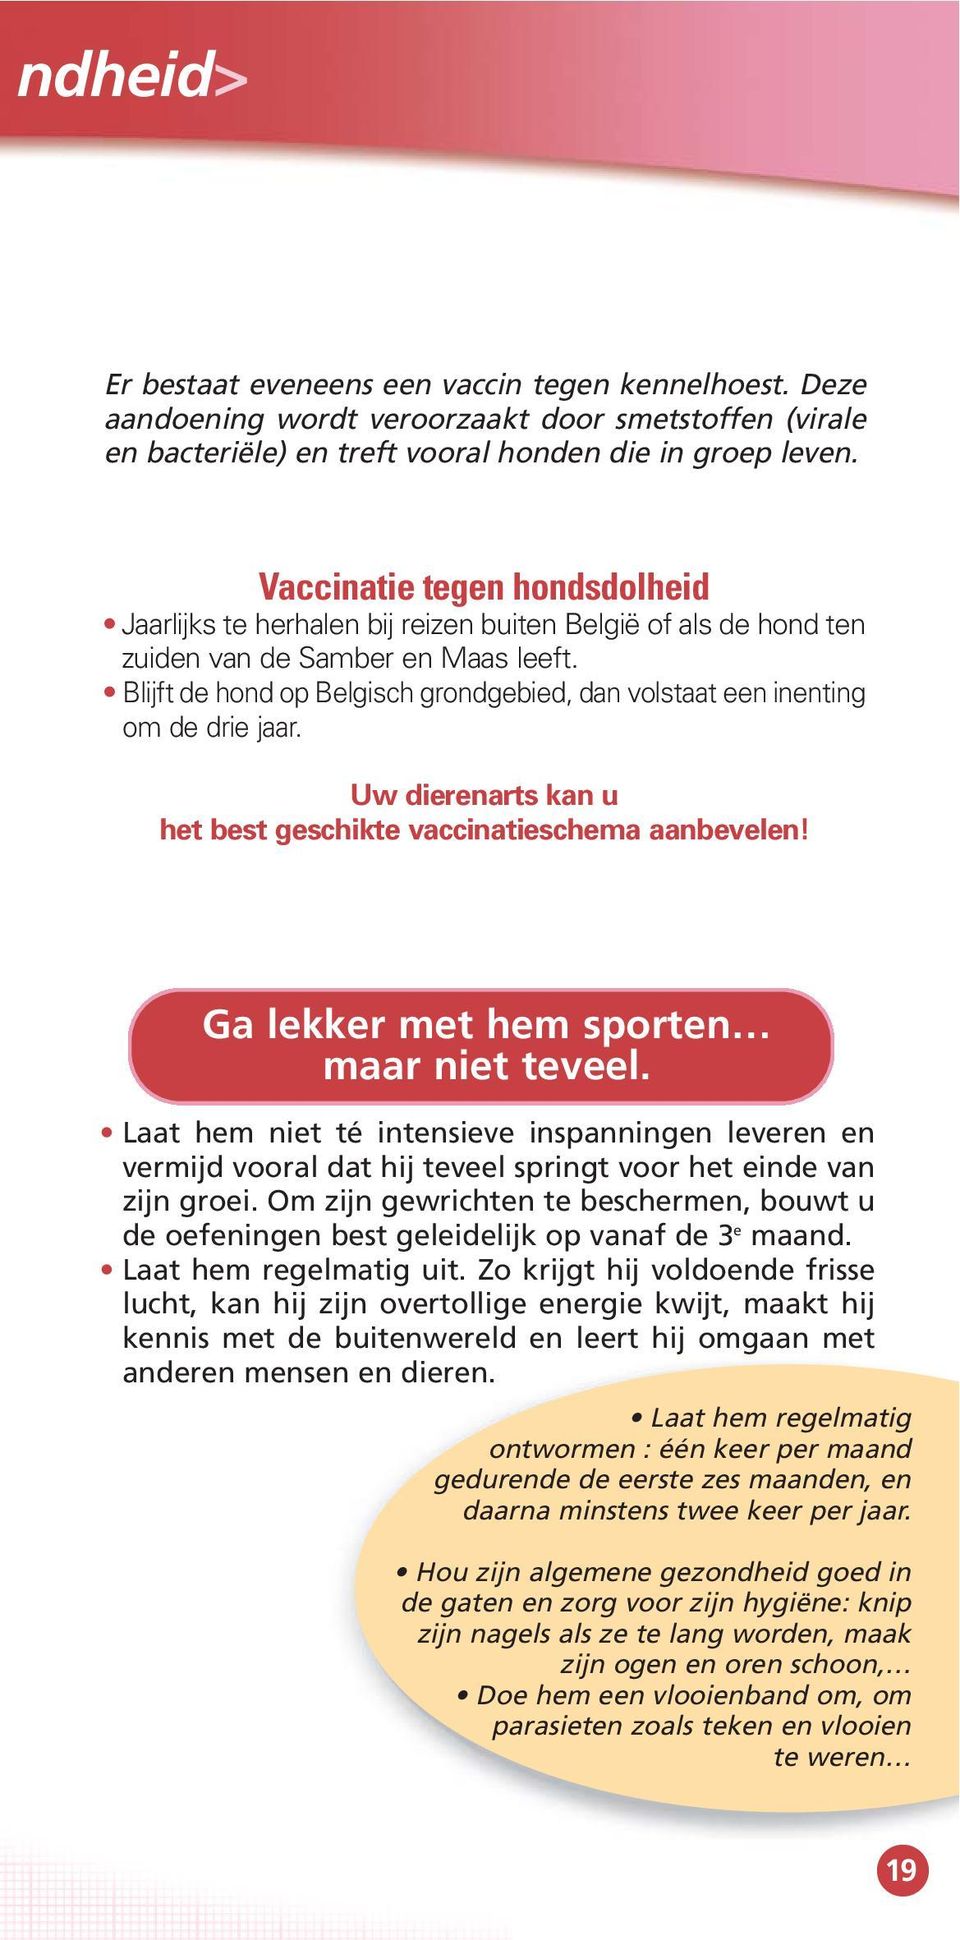 Blijft de hond op Belgisch grondgebied, dan volstaat een inenting om de drie jaar. Uw dierenarts kan u het best geschikte vaccinatieschema aanbevelen! Ga lekker met hem sporten maar niet teveel.